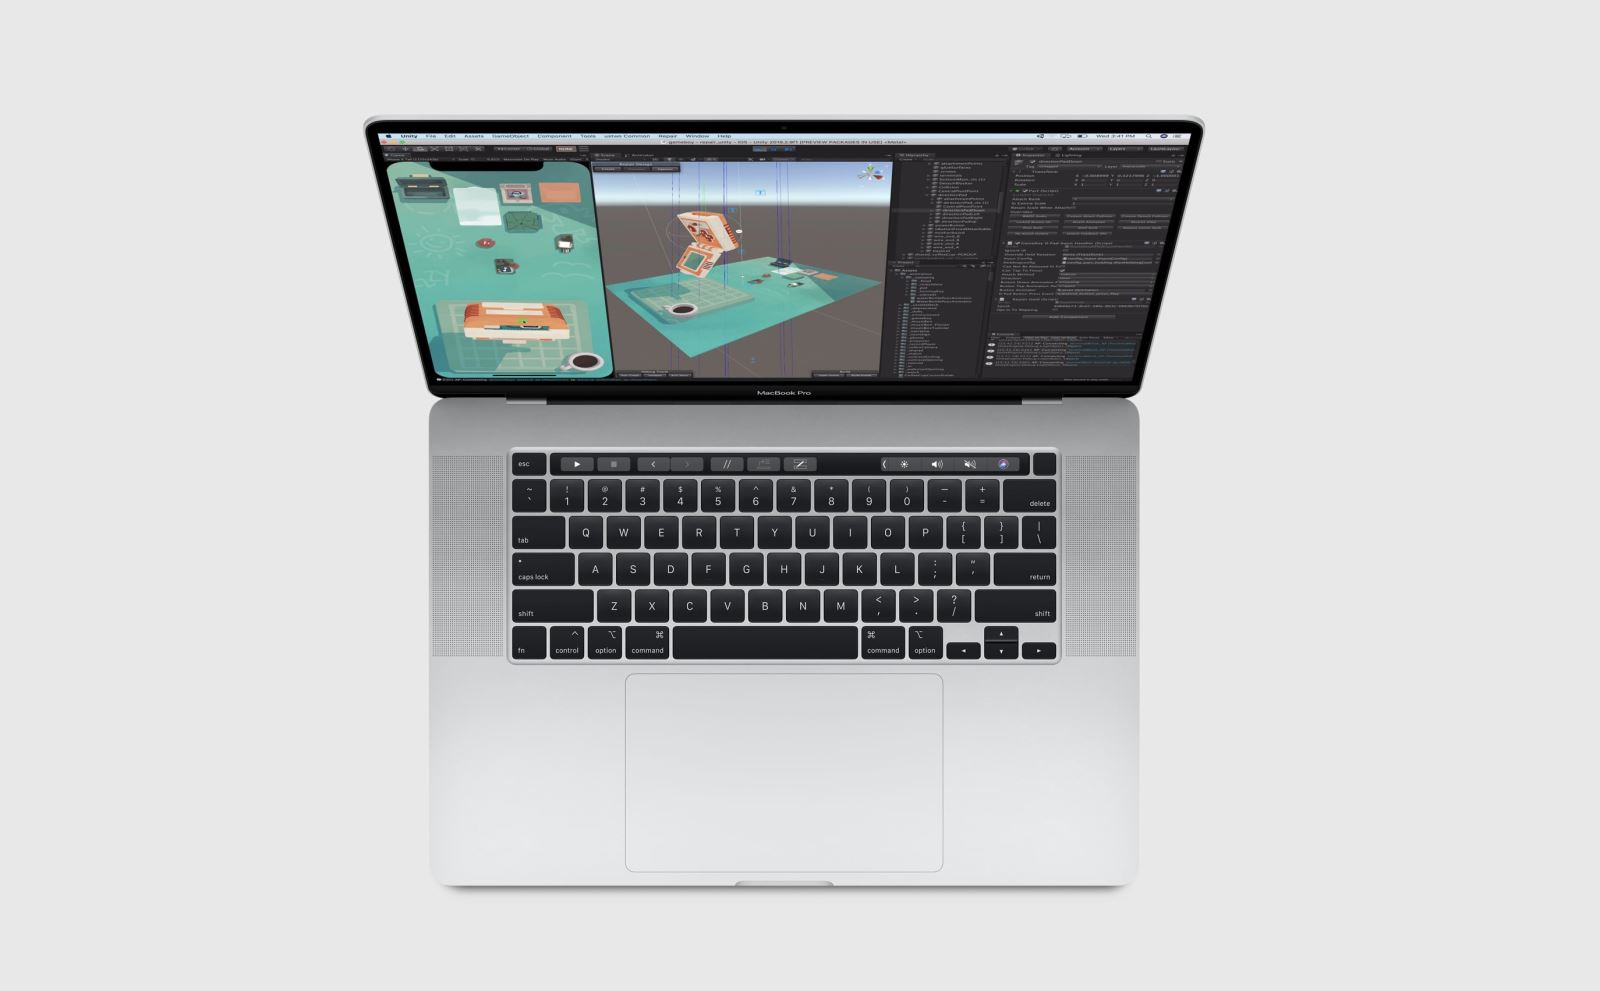 Apple ra mắt MacBook Pro 16 inch: Bàn phím Magic Keyboard, 6 loa, giá từ 2399 USD